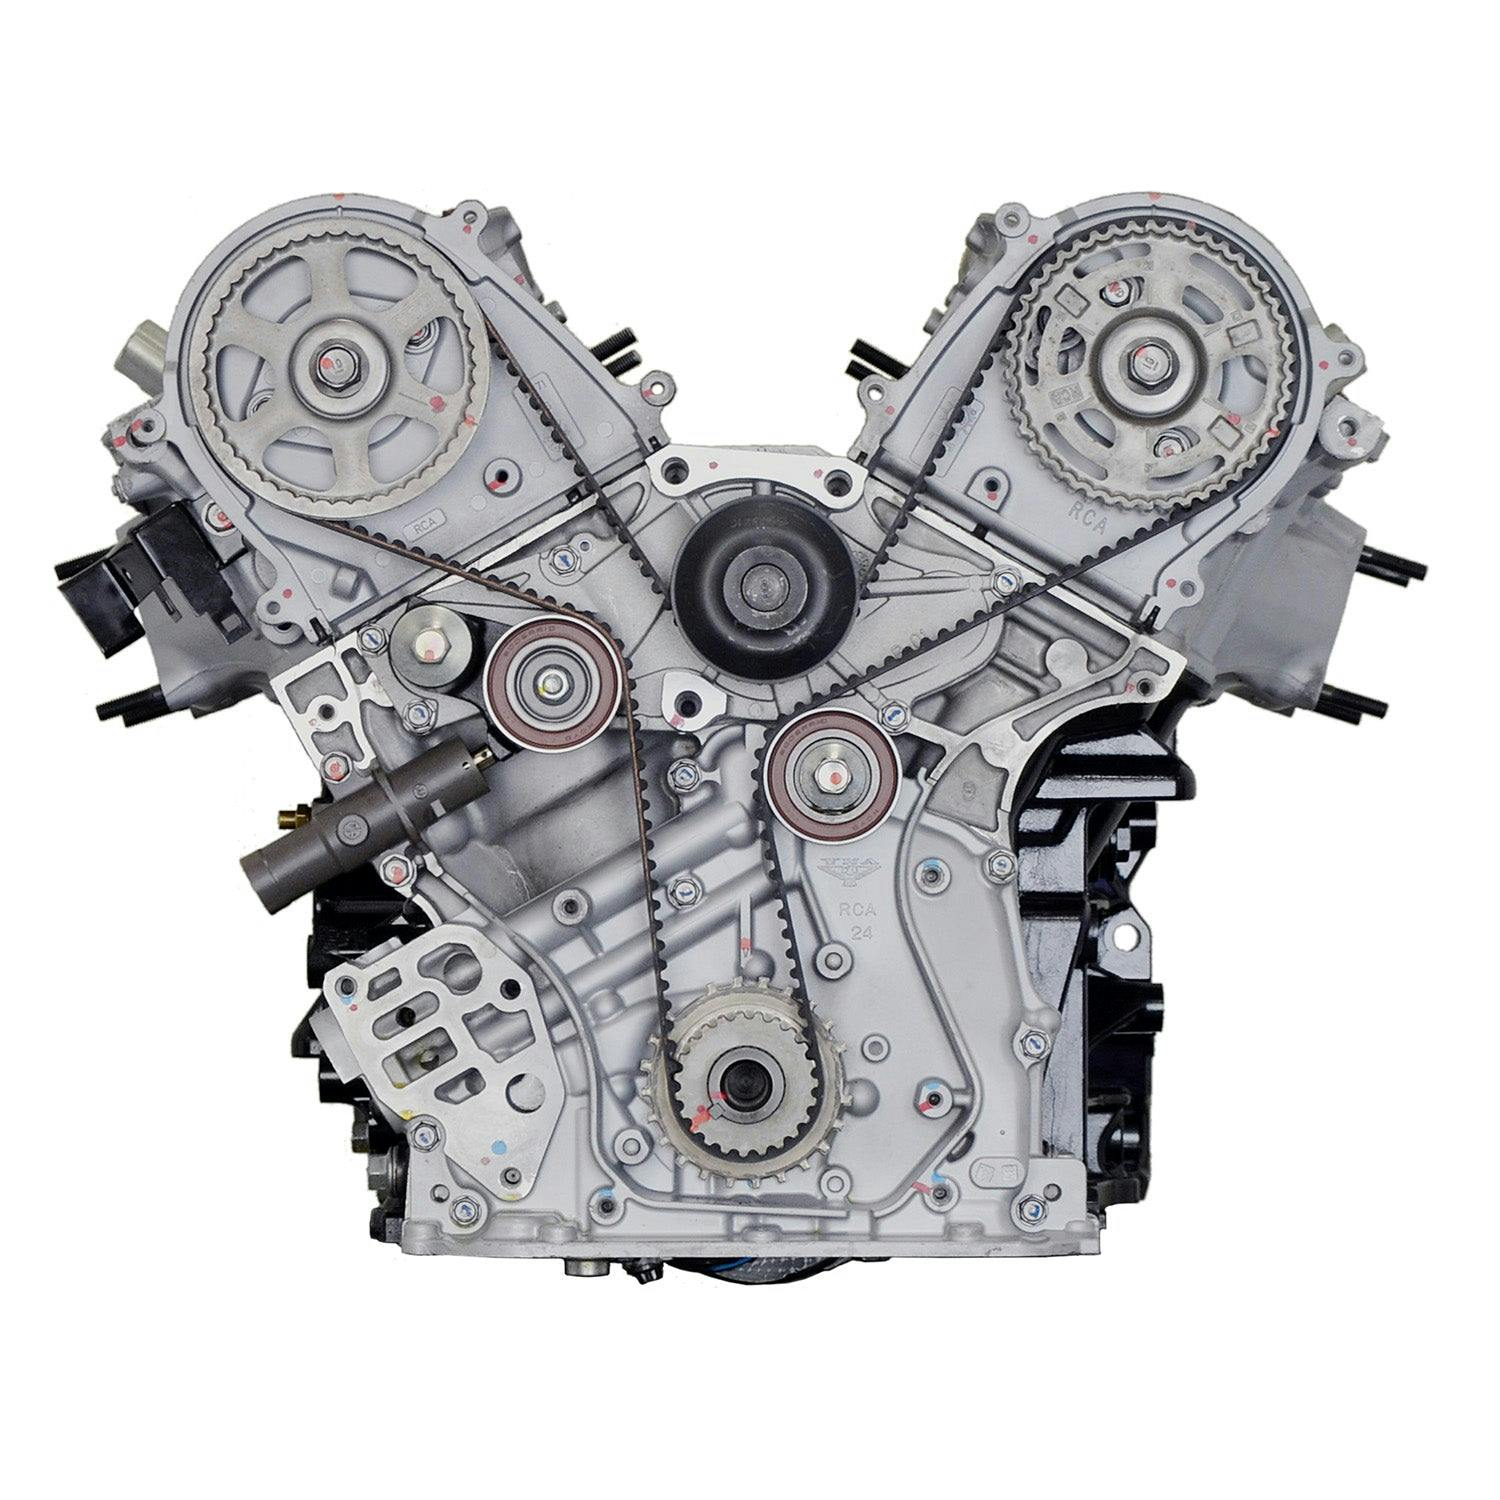 3.5L V6 Engine for 2008-2010 Honda Odyssey